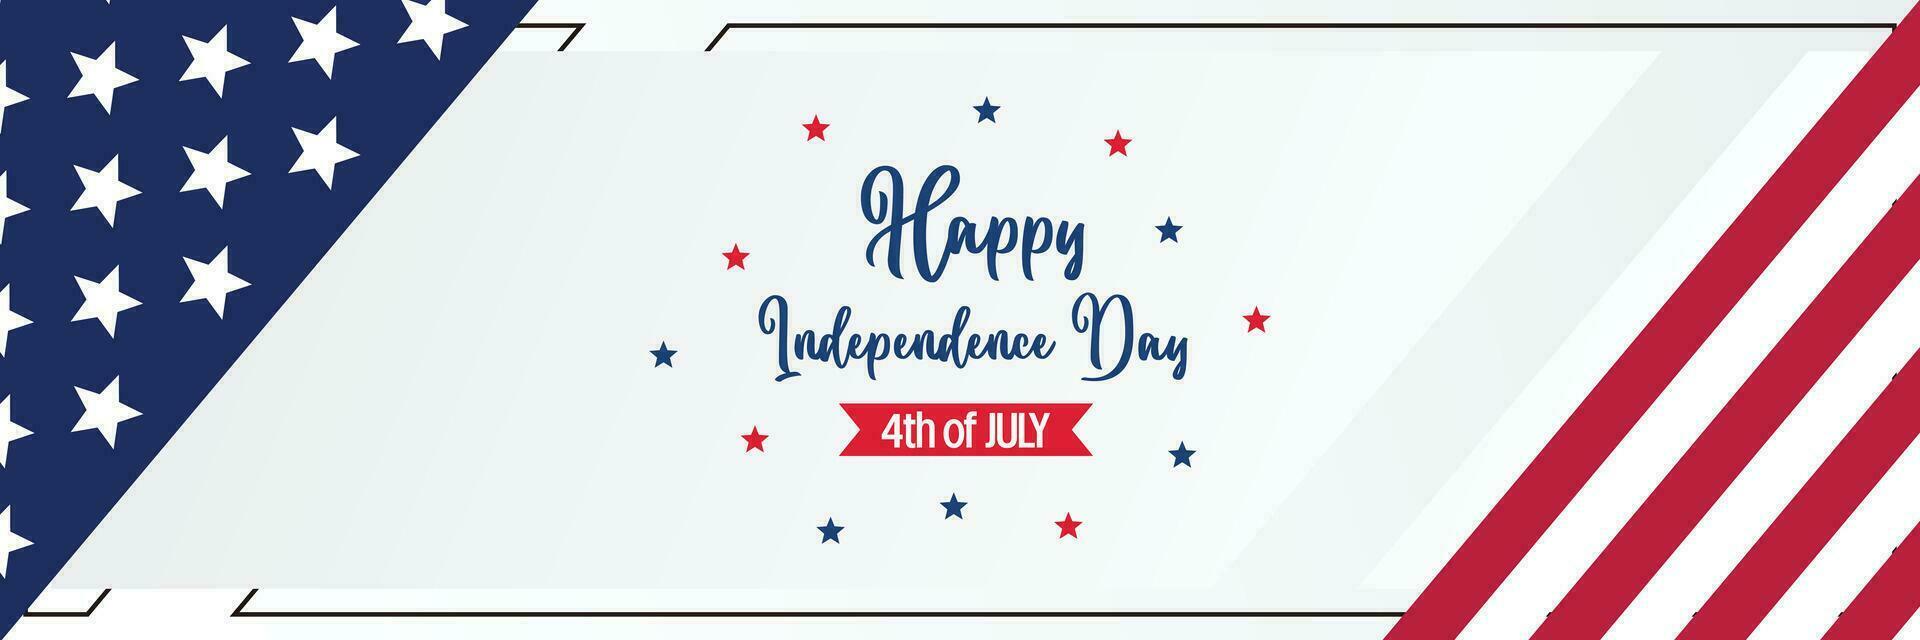 gelukkig Amerikaans onafhankelijkheid dag achtergrond, met vlag decoratie. vector ontwerp voor banier, groet kaart, brochure, web, sociaal media.